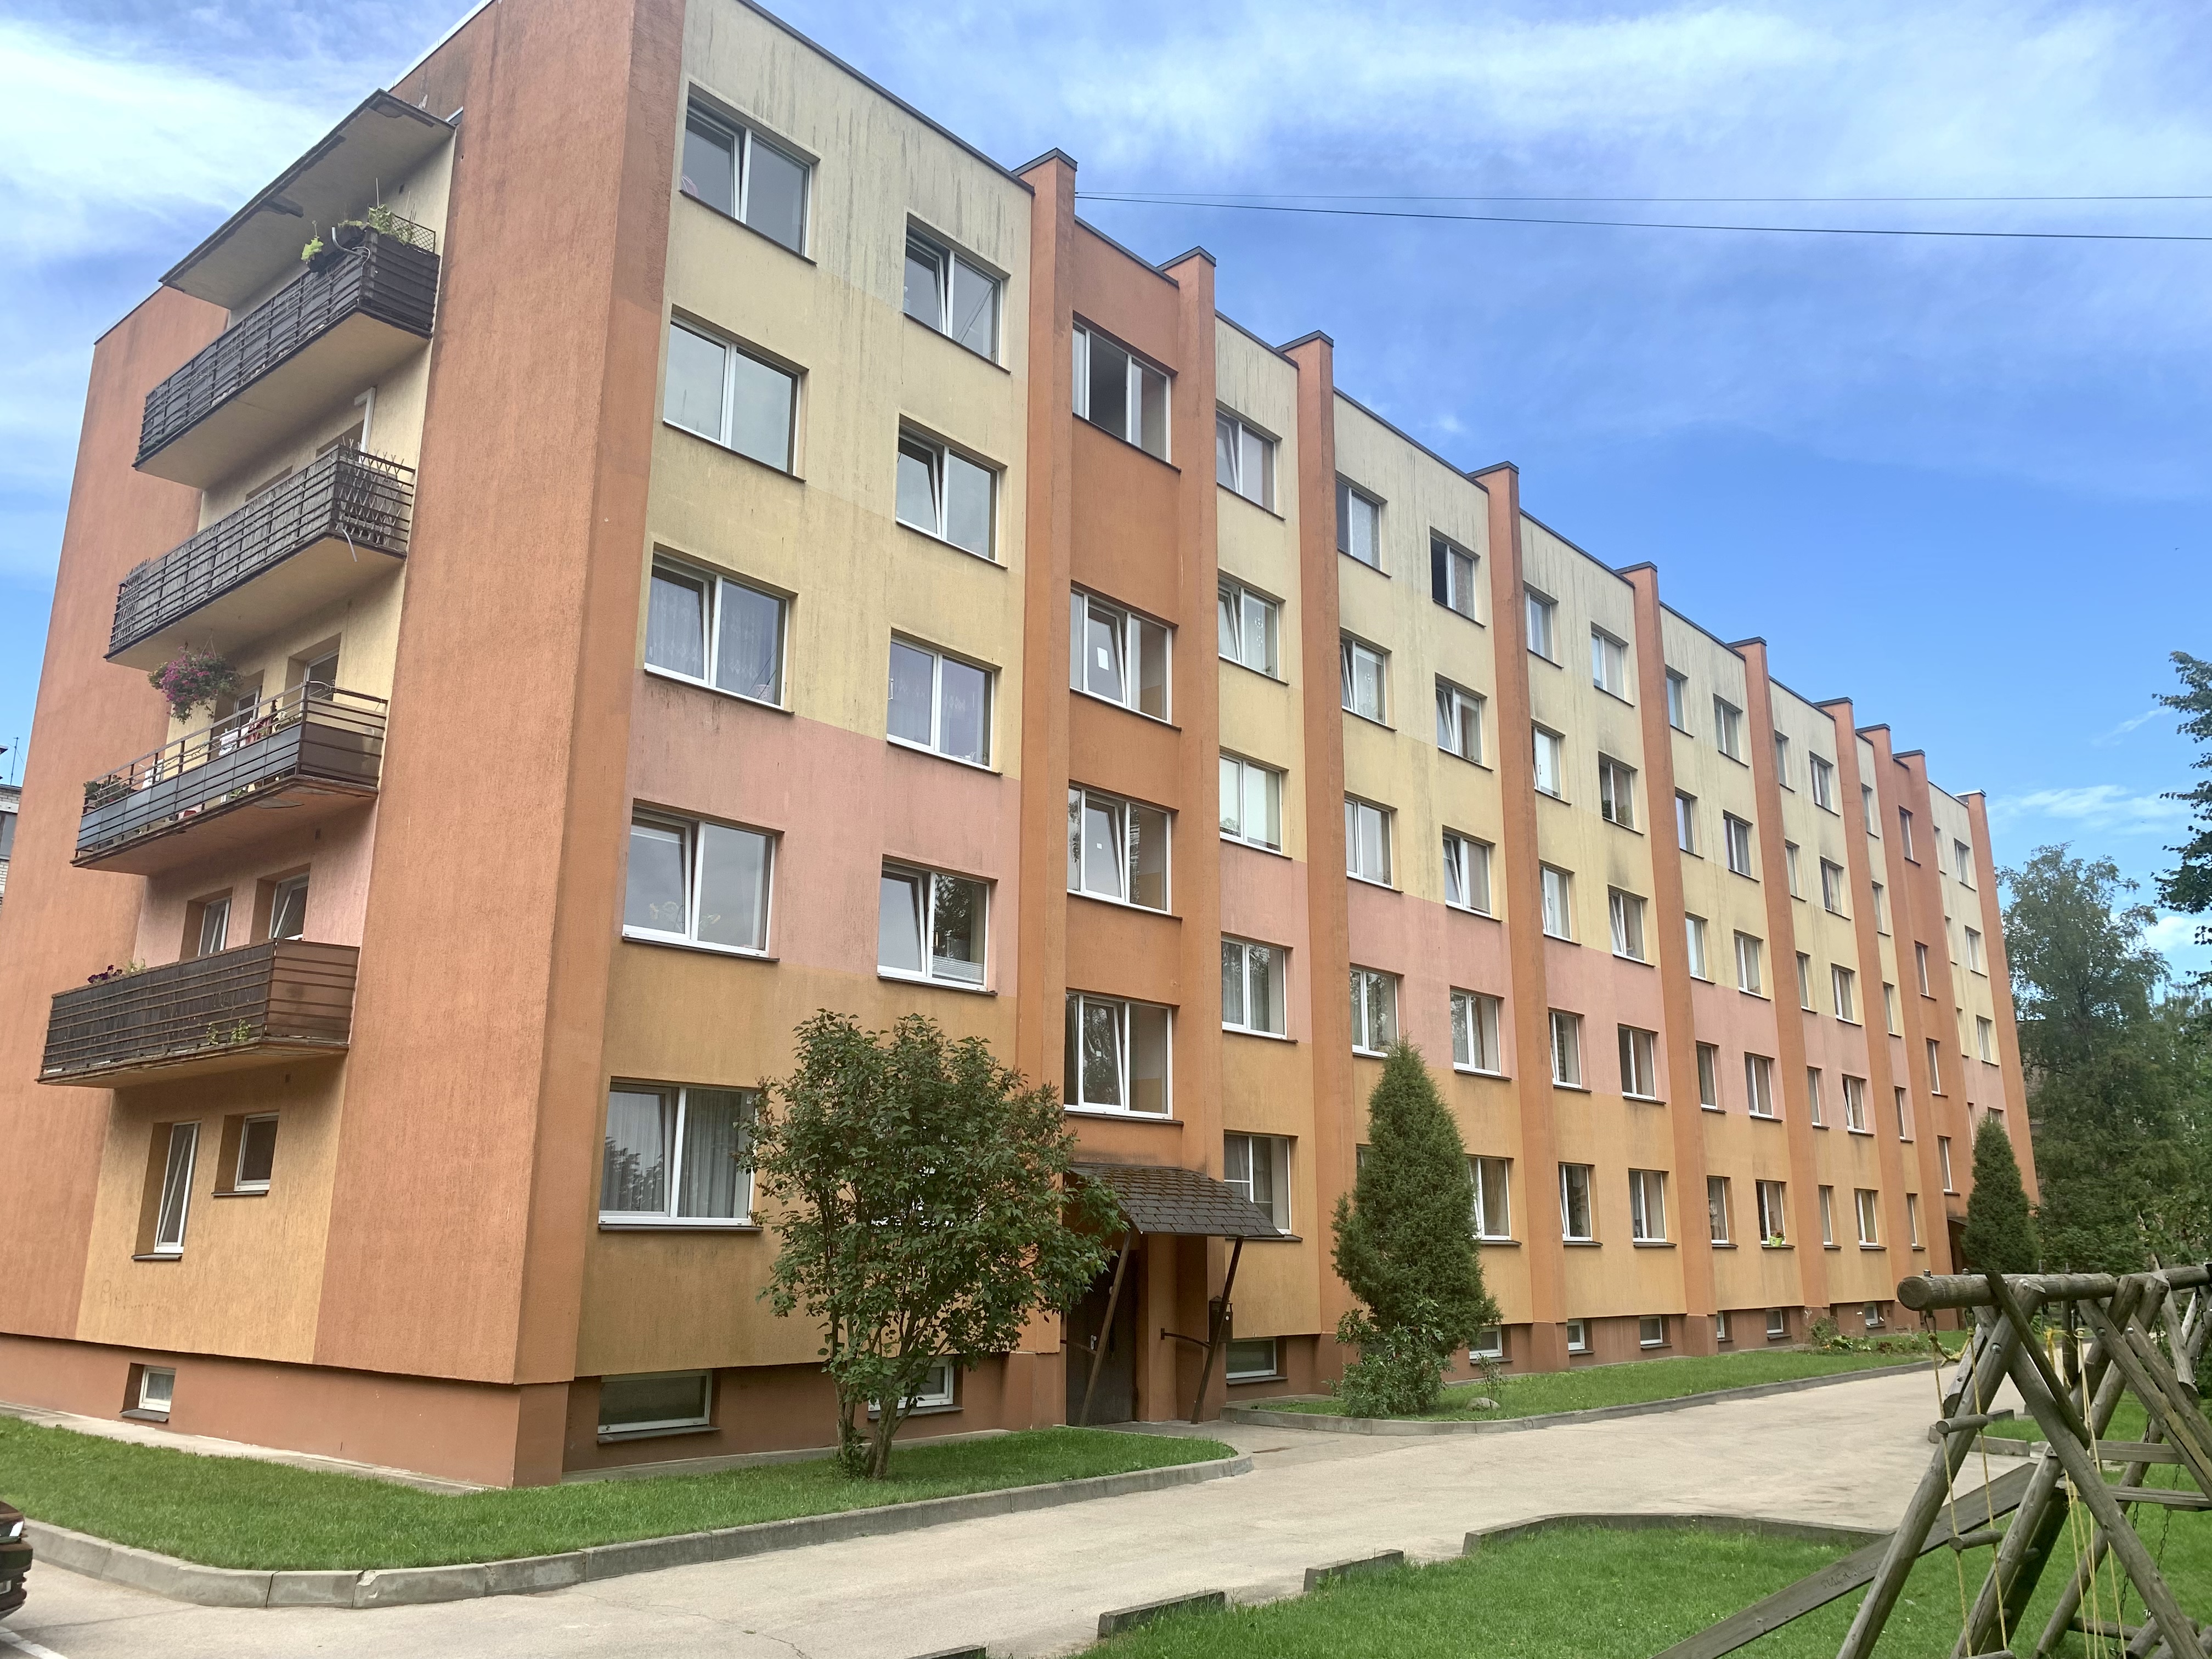 Apartment for sale, Mārkalnes street 3 - Image 1